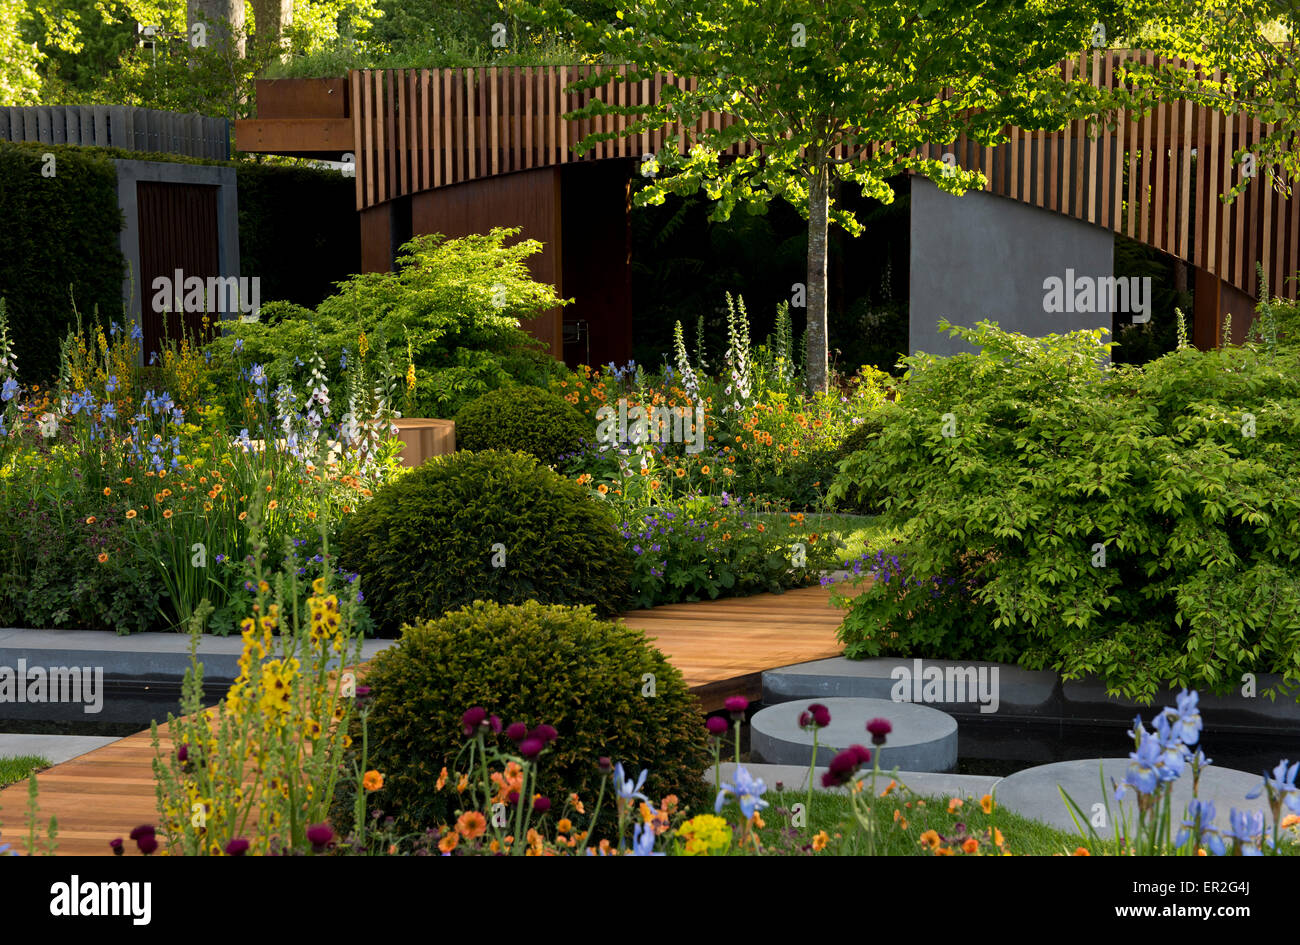 La Homebase rifugio urbano giardino disegnato da Adam Frost e vincitore di una medaglia d oro al Chelsea Flower Show Foto Stock